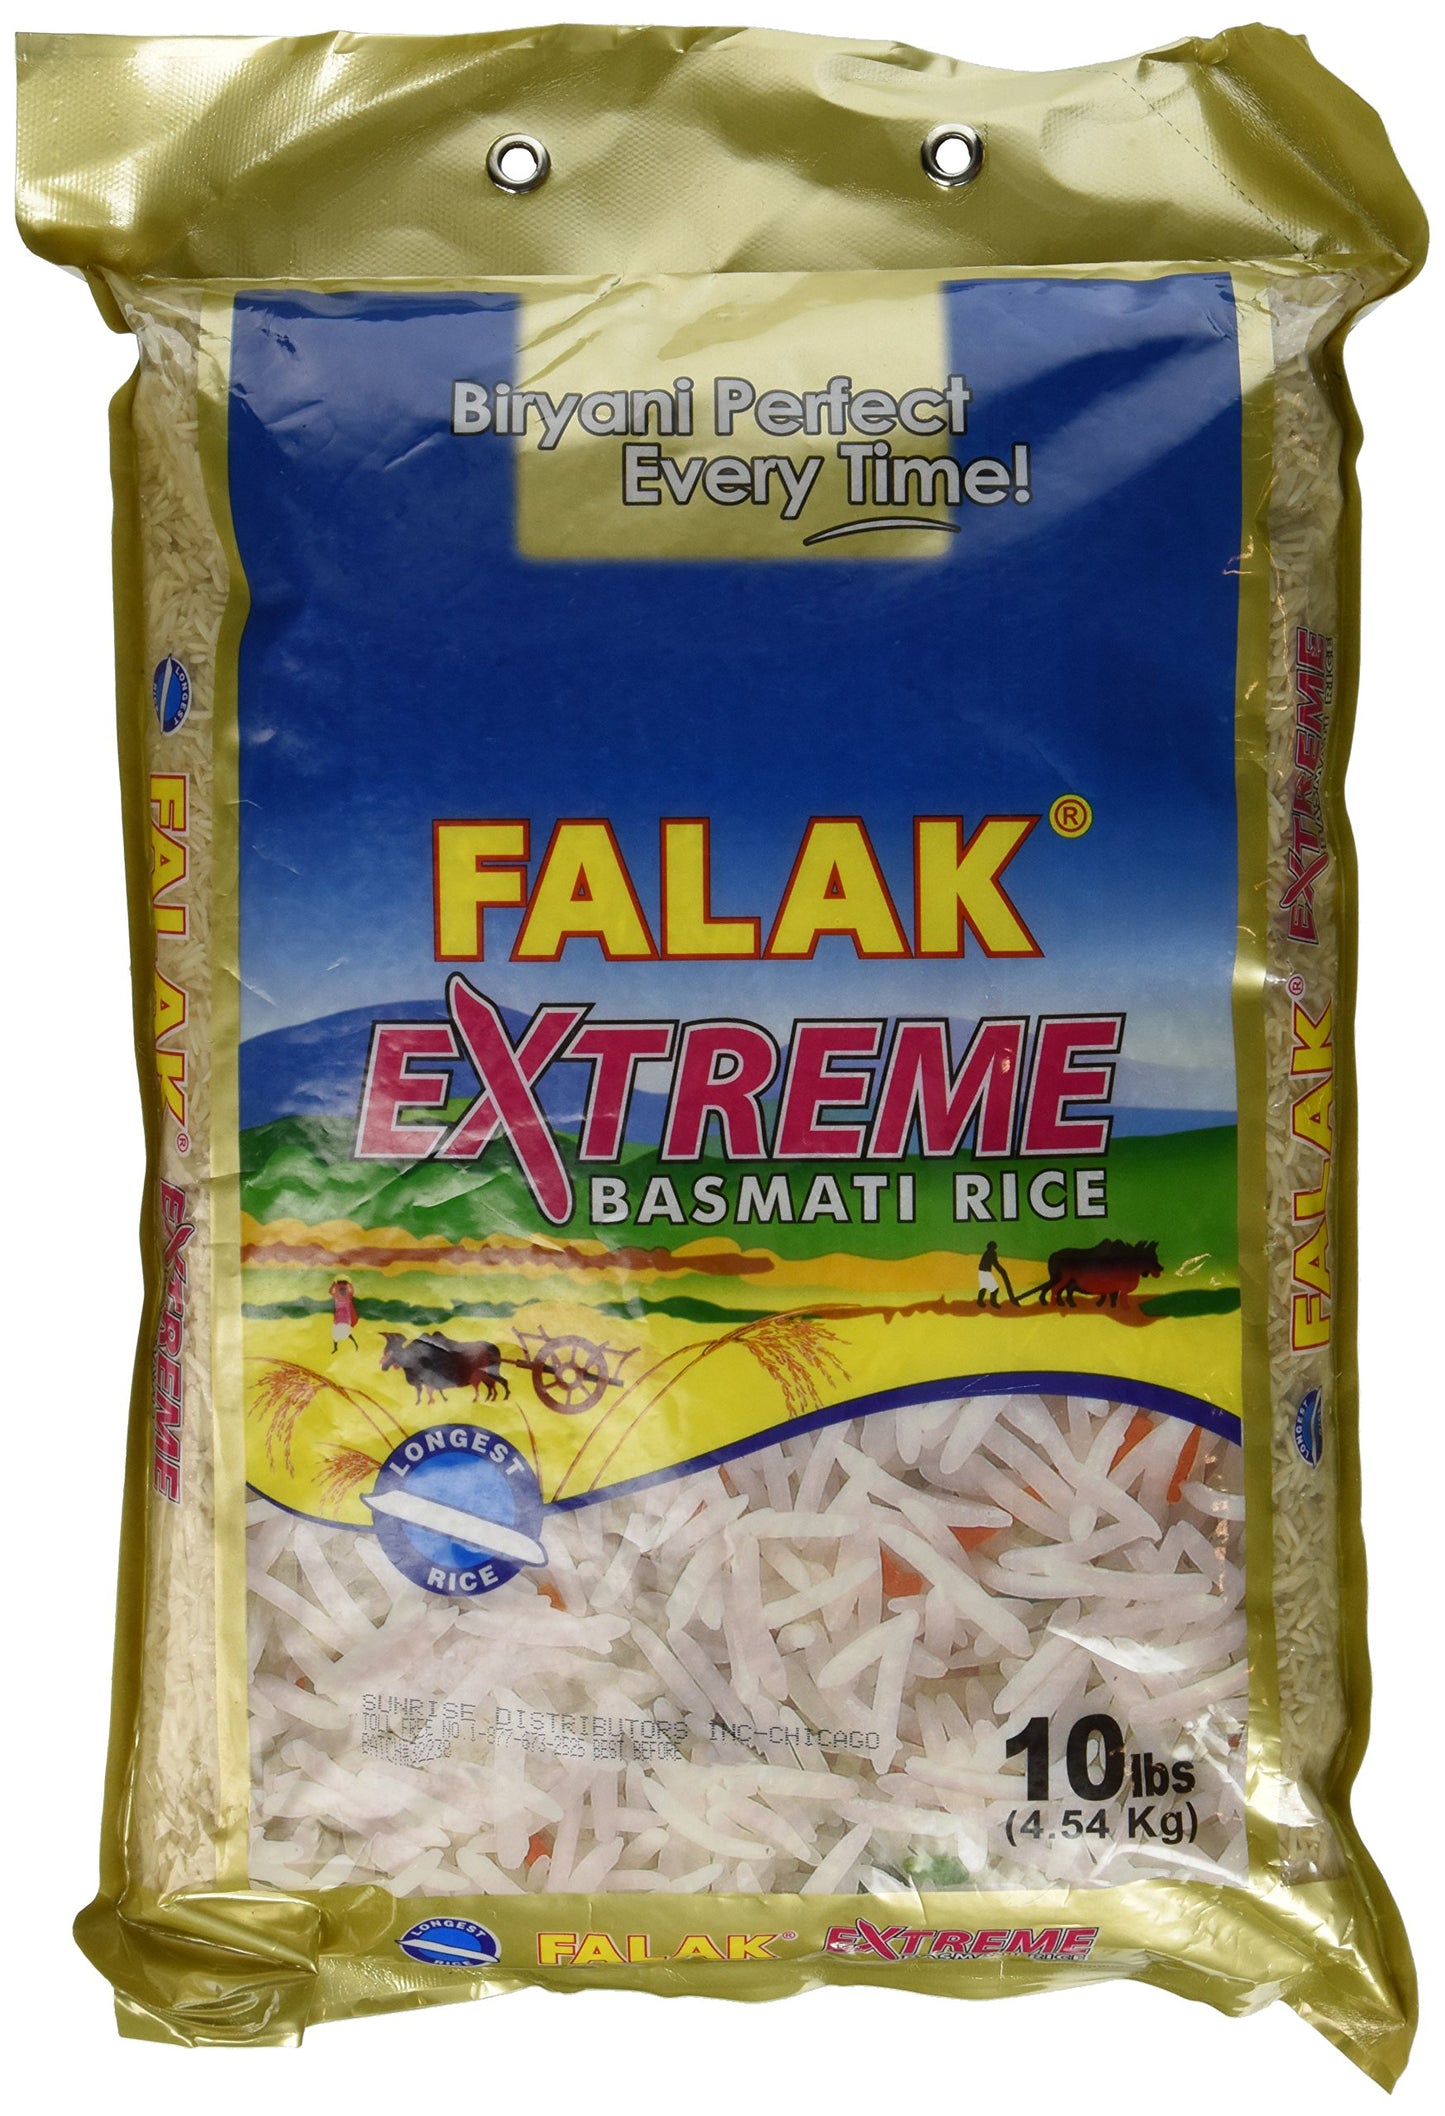 Falak Basmati Rice (10 Lbs)